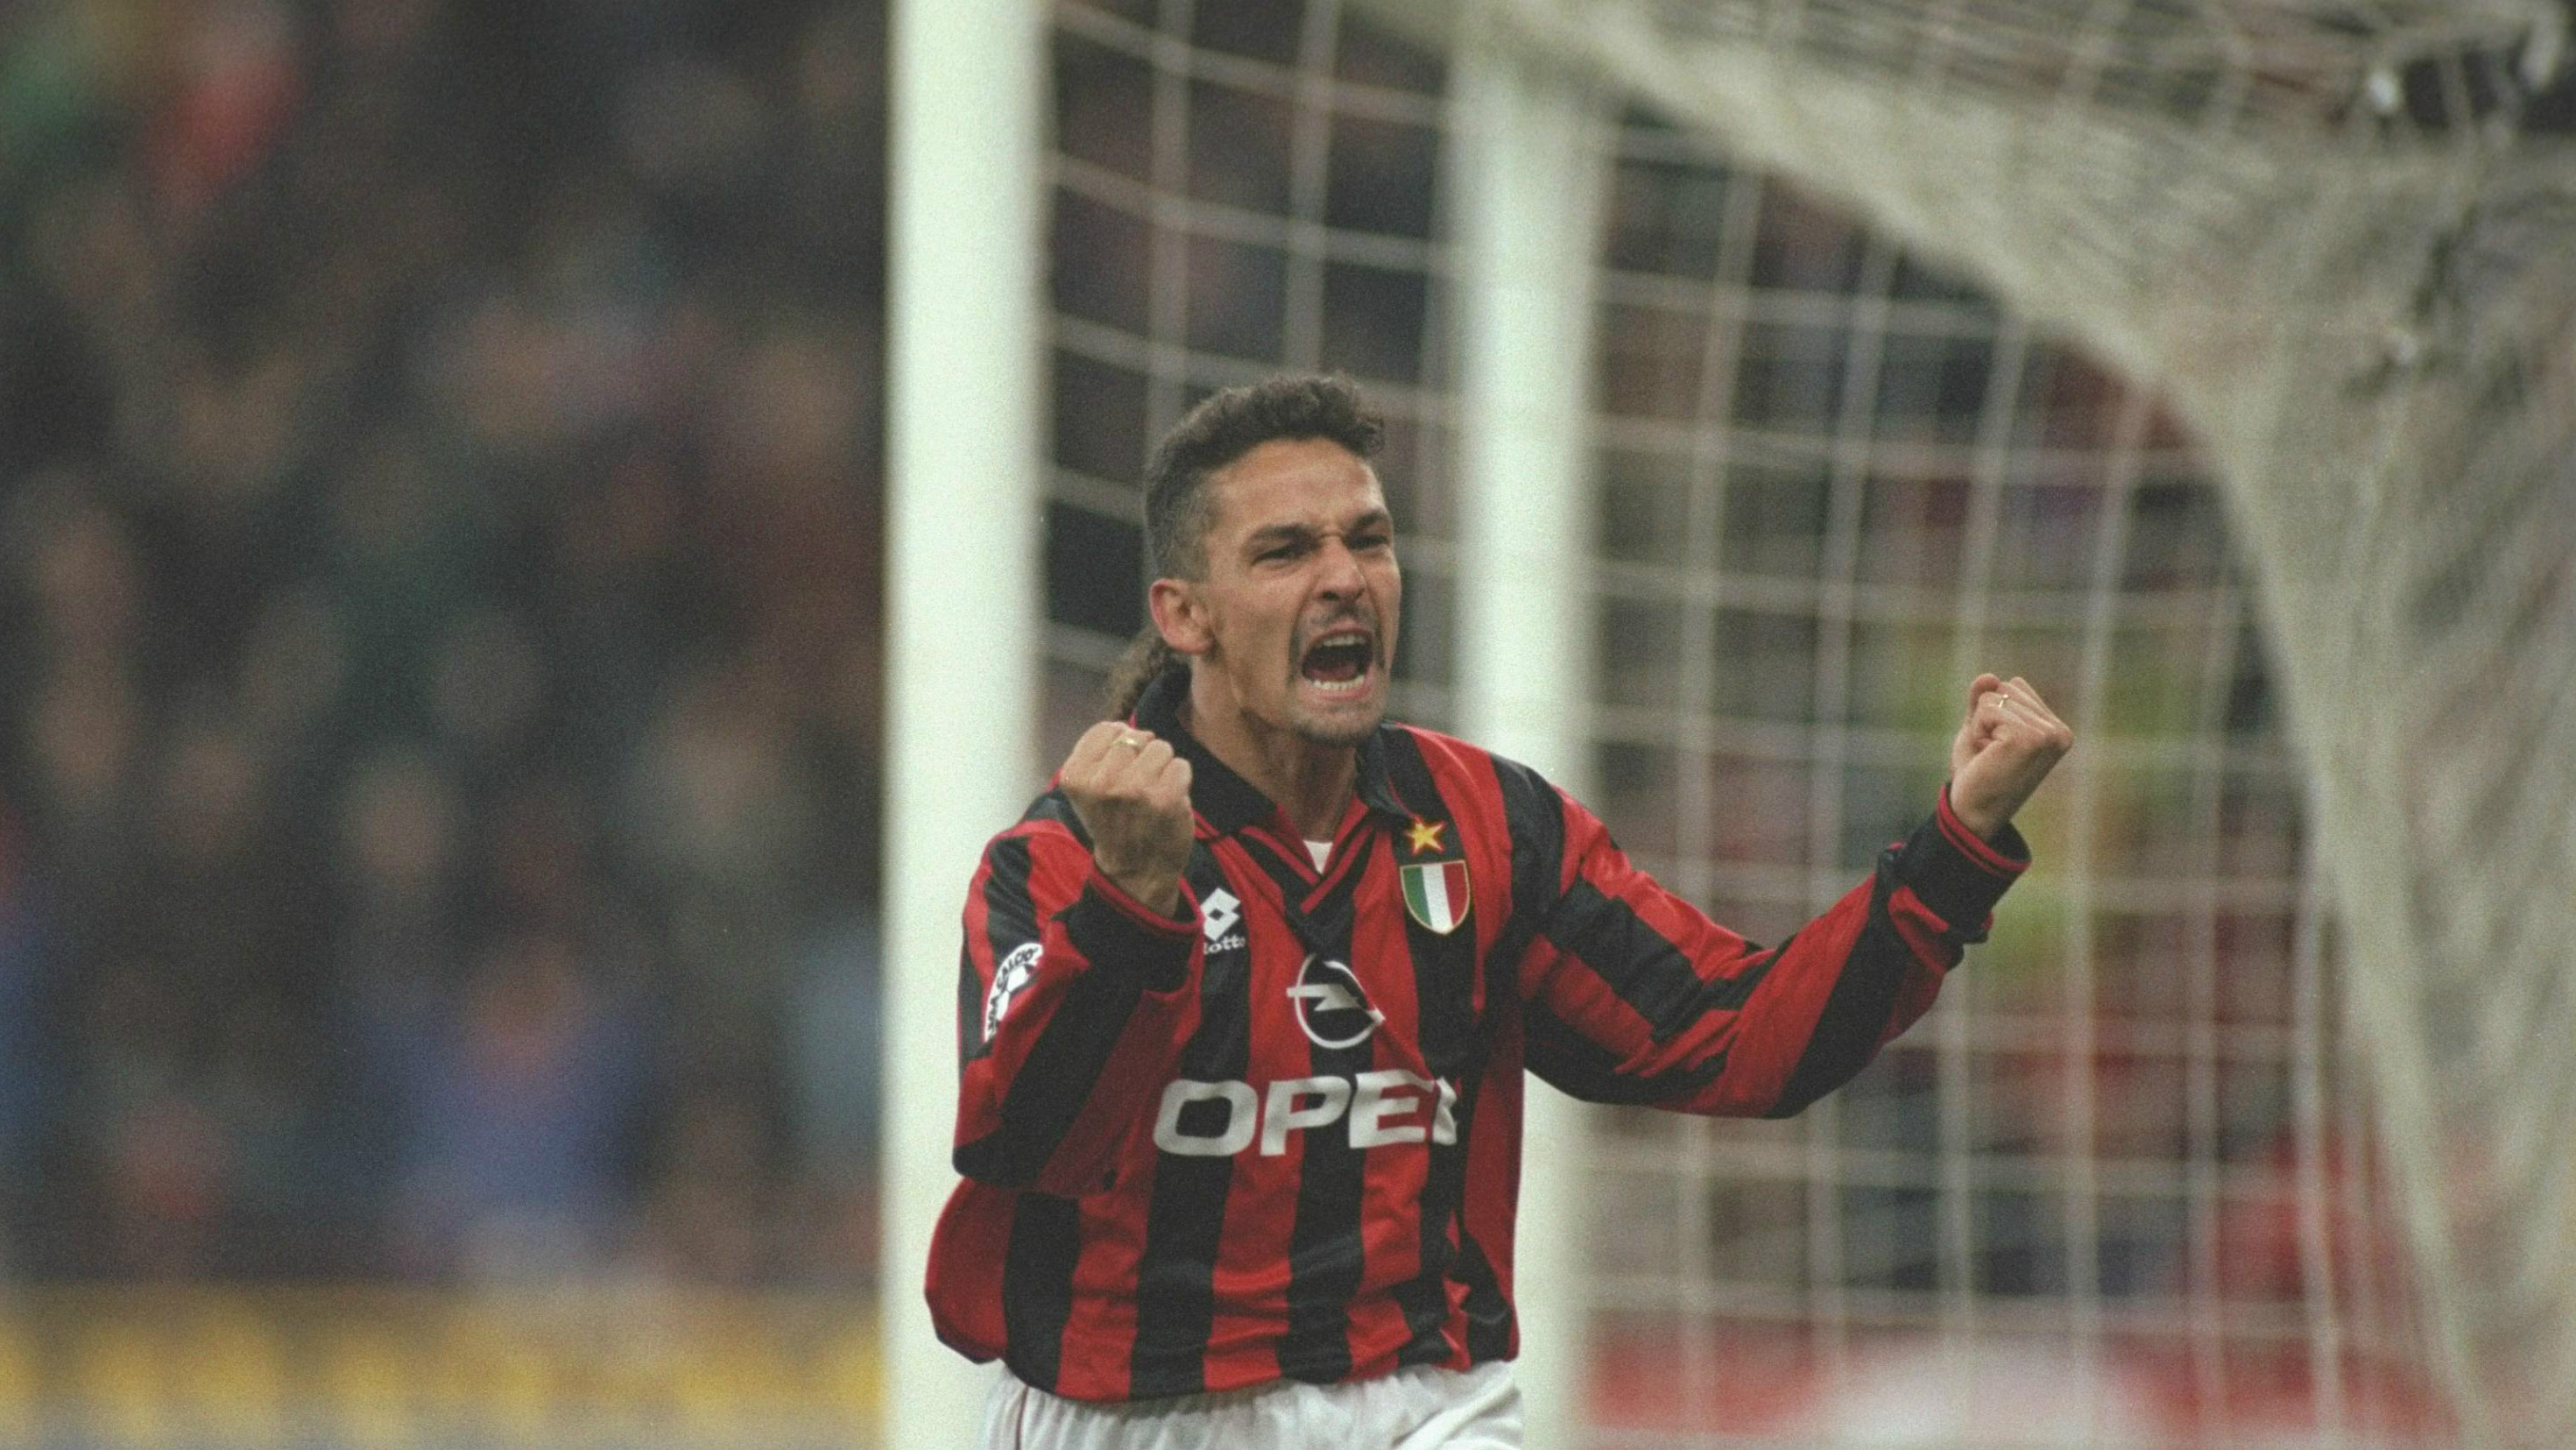 Roberto Baggio Milan 24101996 - Goal.com2941 x 1655